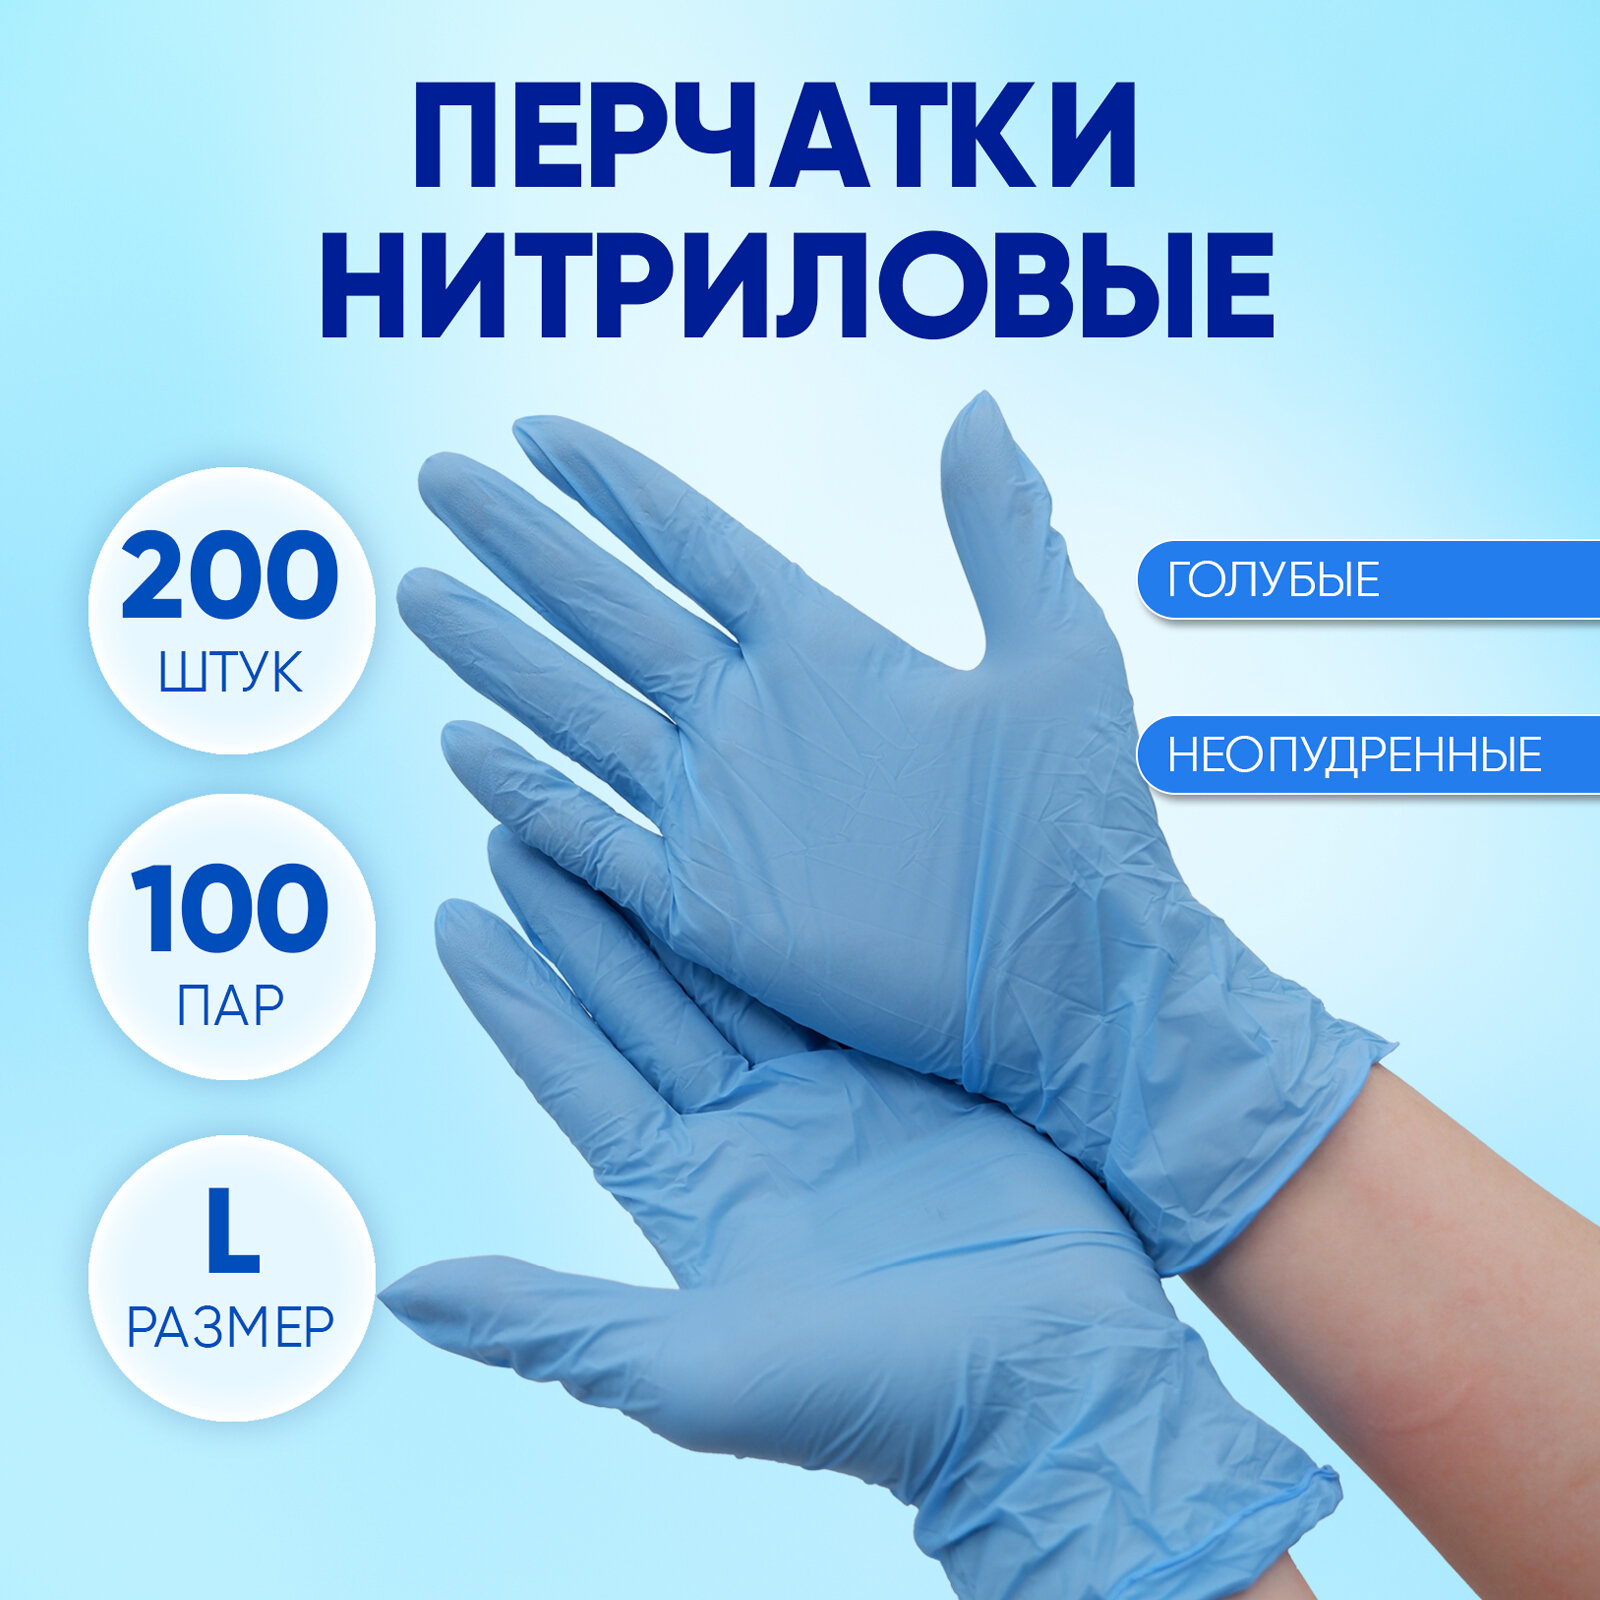 Перчатки нитриловые одноразовые голубые, Optiline, размер L, упаковка 200 штук